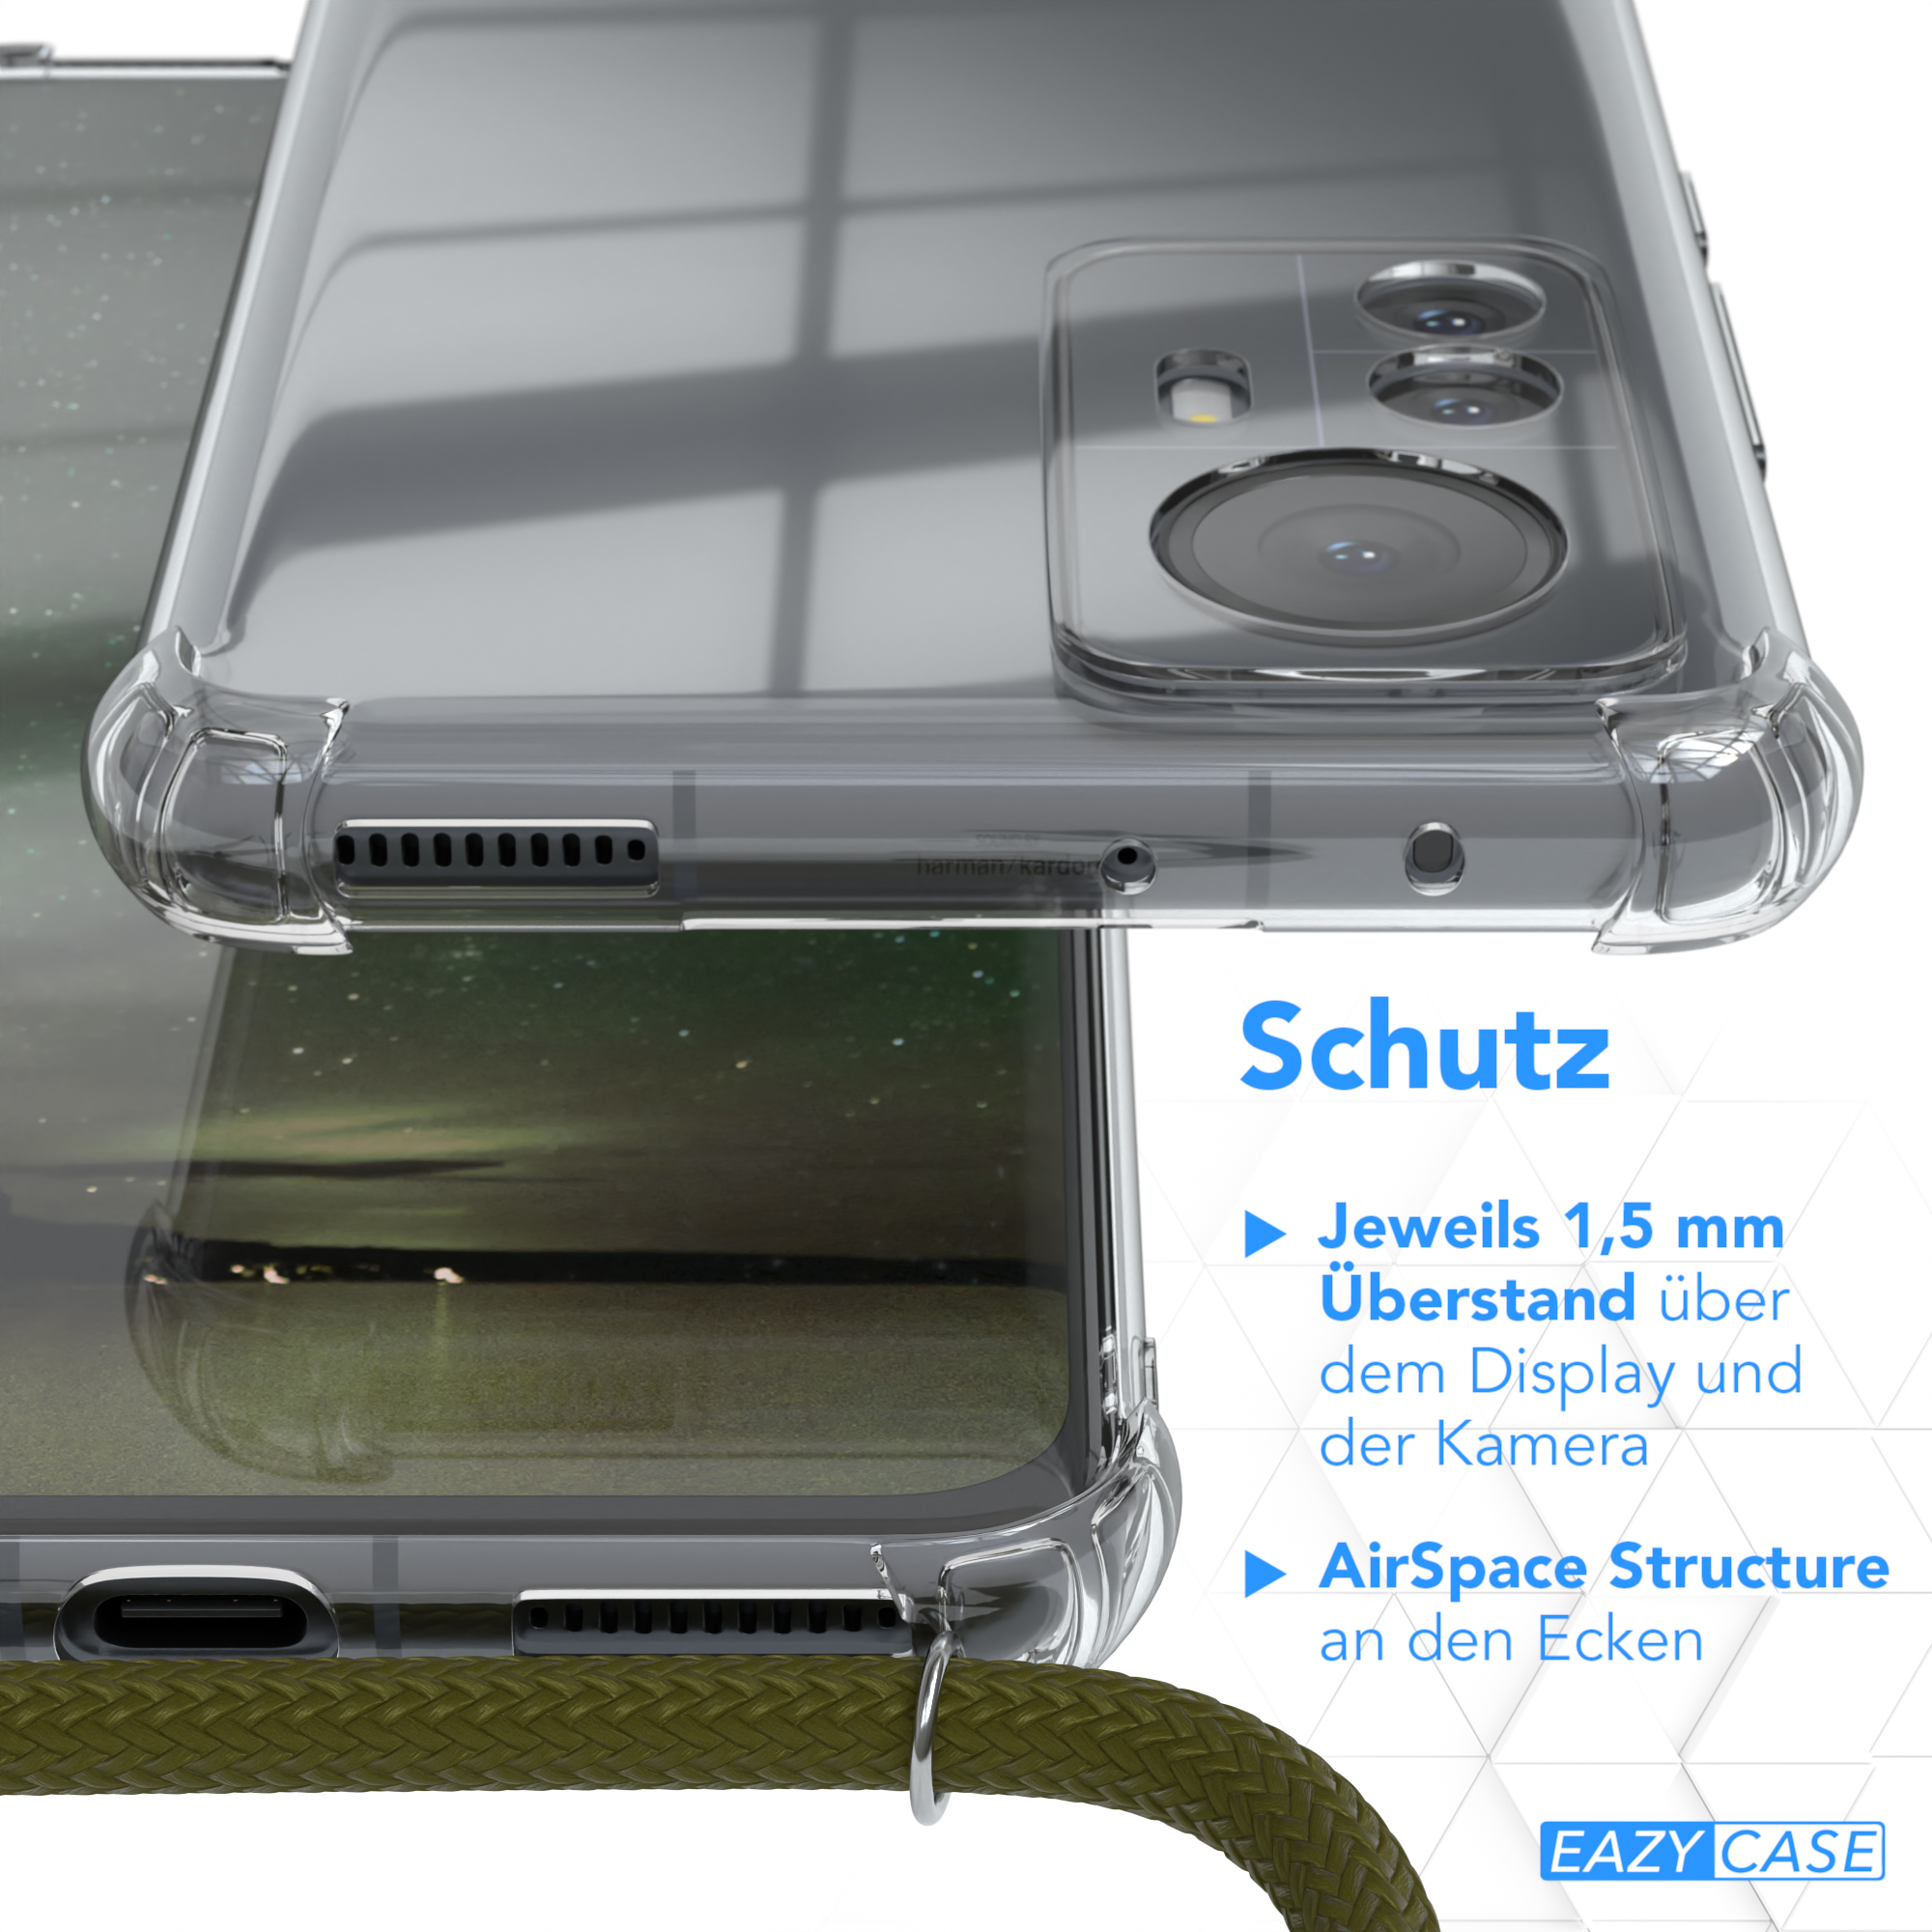 CASE 12 Pro, Olive Cover Grün Xiaomi, Umhängeband, Clear mit EAZY Umhängetasche,